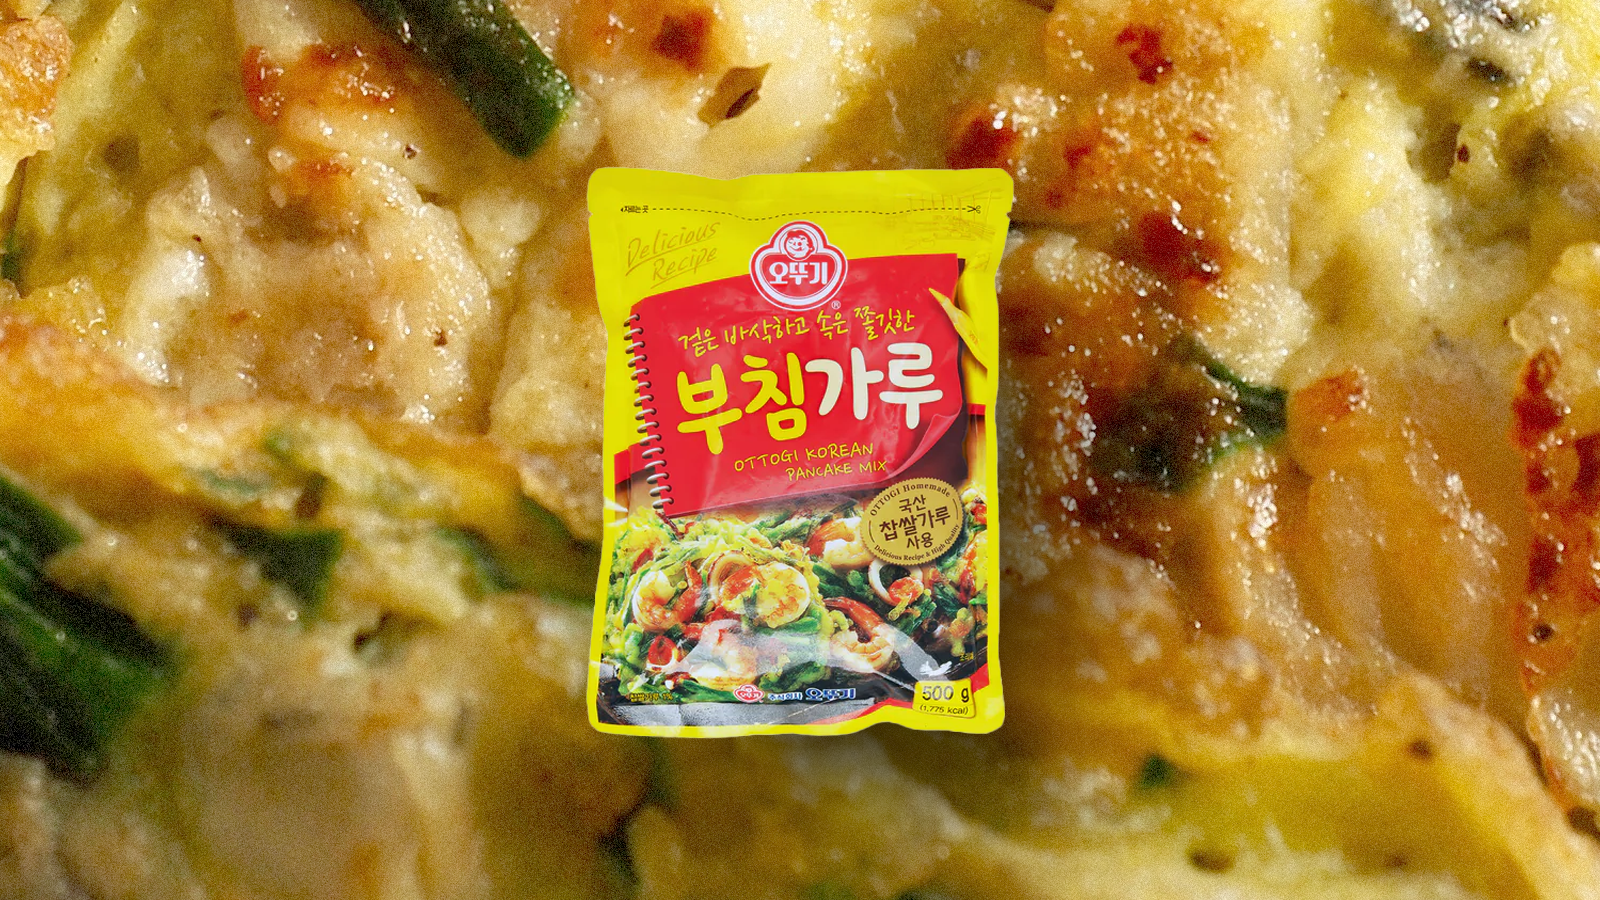 A close-up shot of a Korean pancake with a bag of Korean pancake mix layered on top